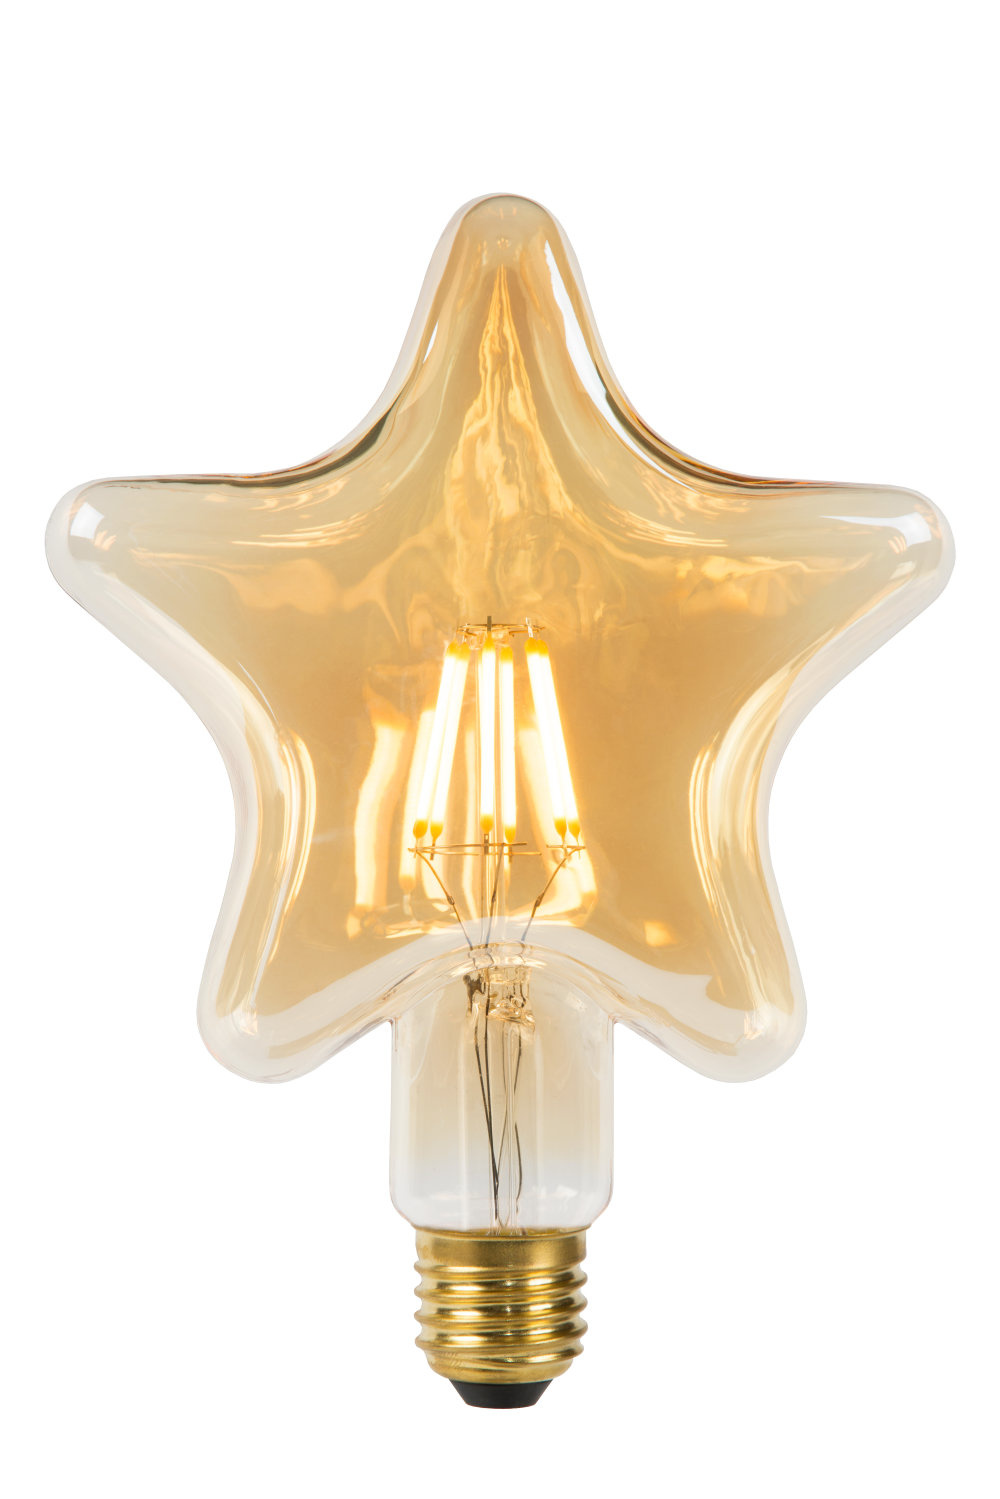 STAR - Filament lamp - Ø 6 cm - LED - E27 - 1x7W 2200K - Amber